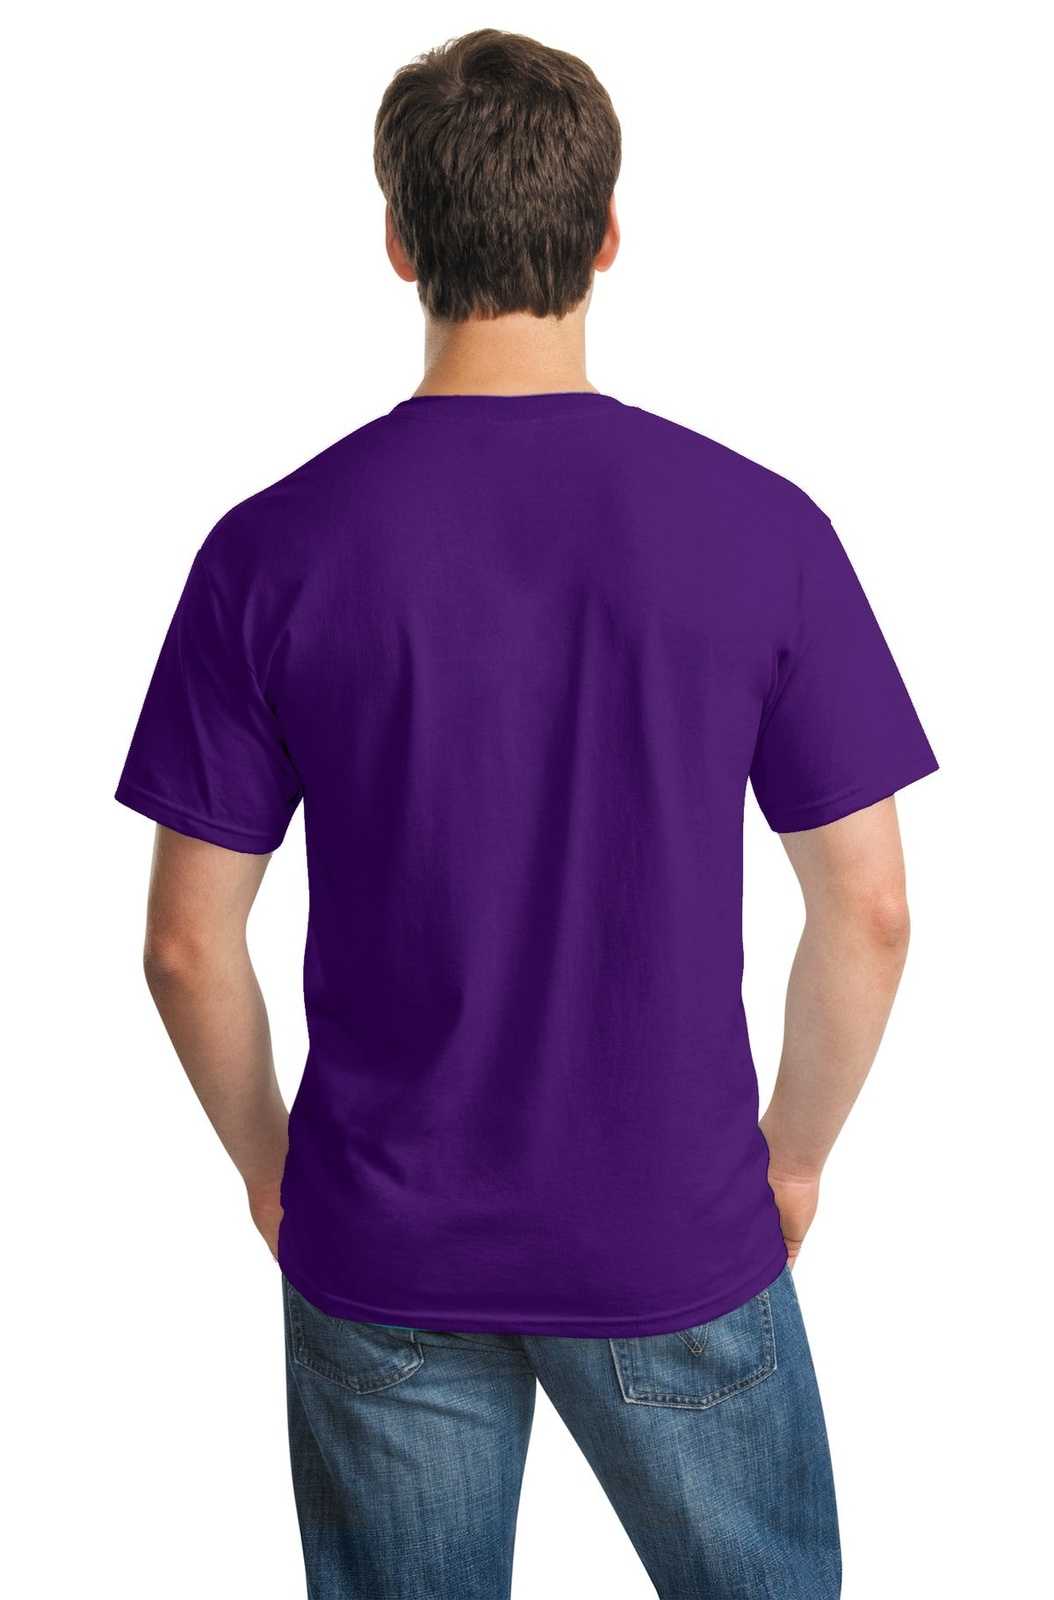 Gildan 5000 Heavy Cotton 100% Cotton T-Shirt - Purple - HIT a Double